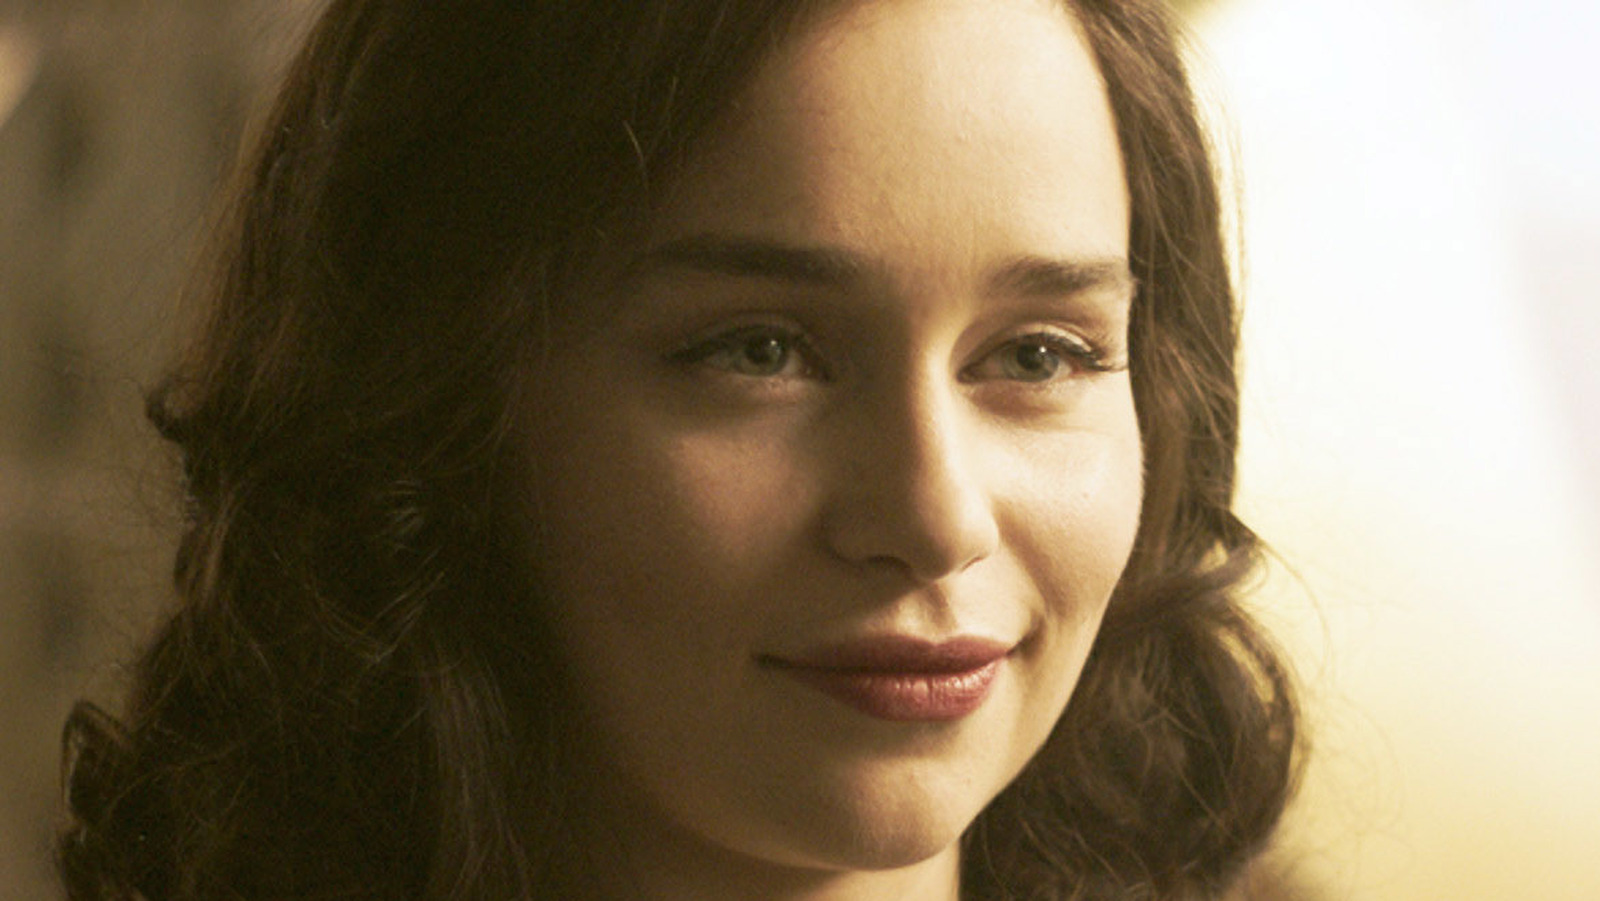 Emilia Clarke's SECRET INVASION Skrull Character Rumored to Return